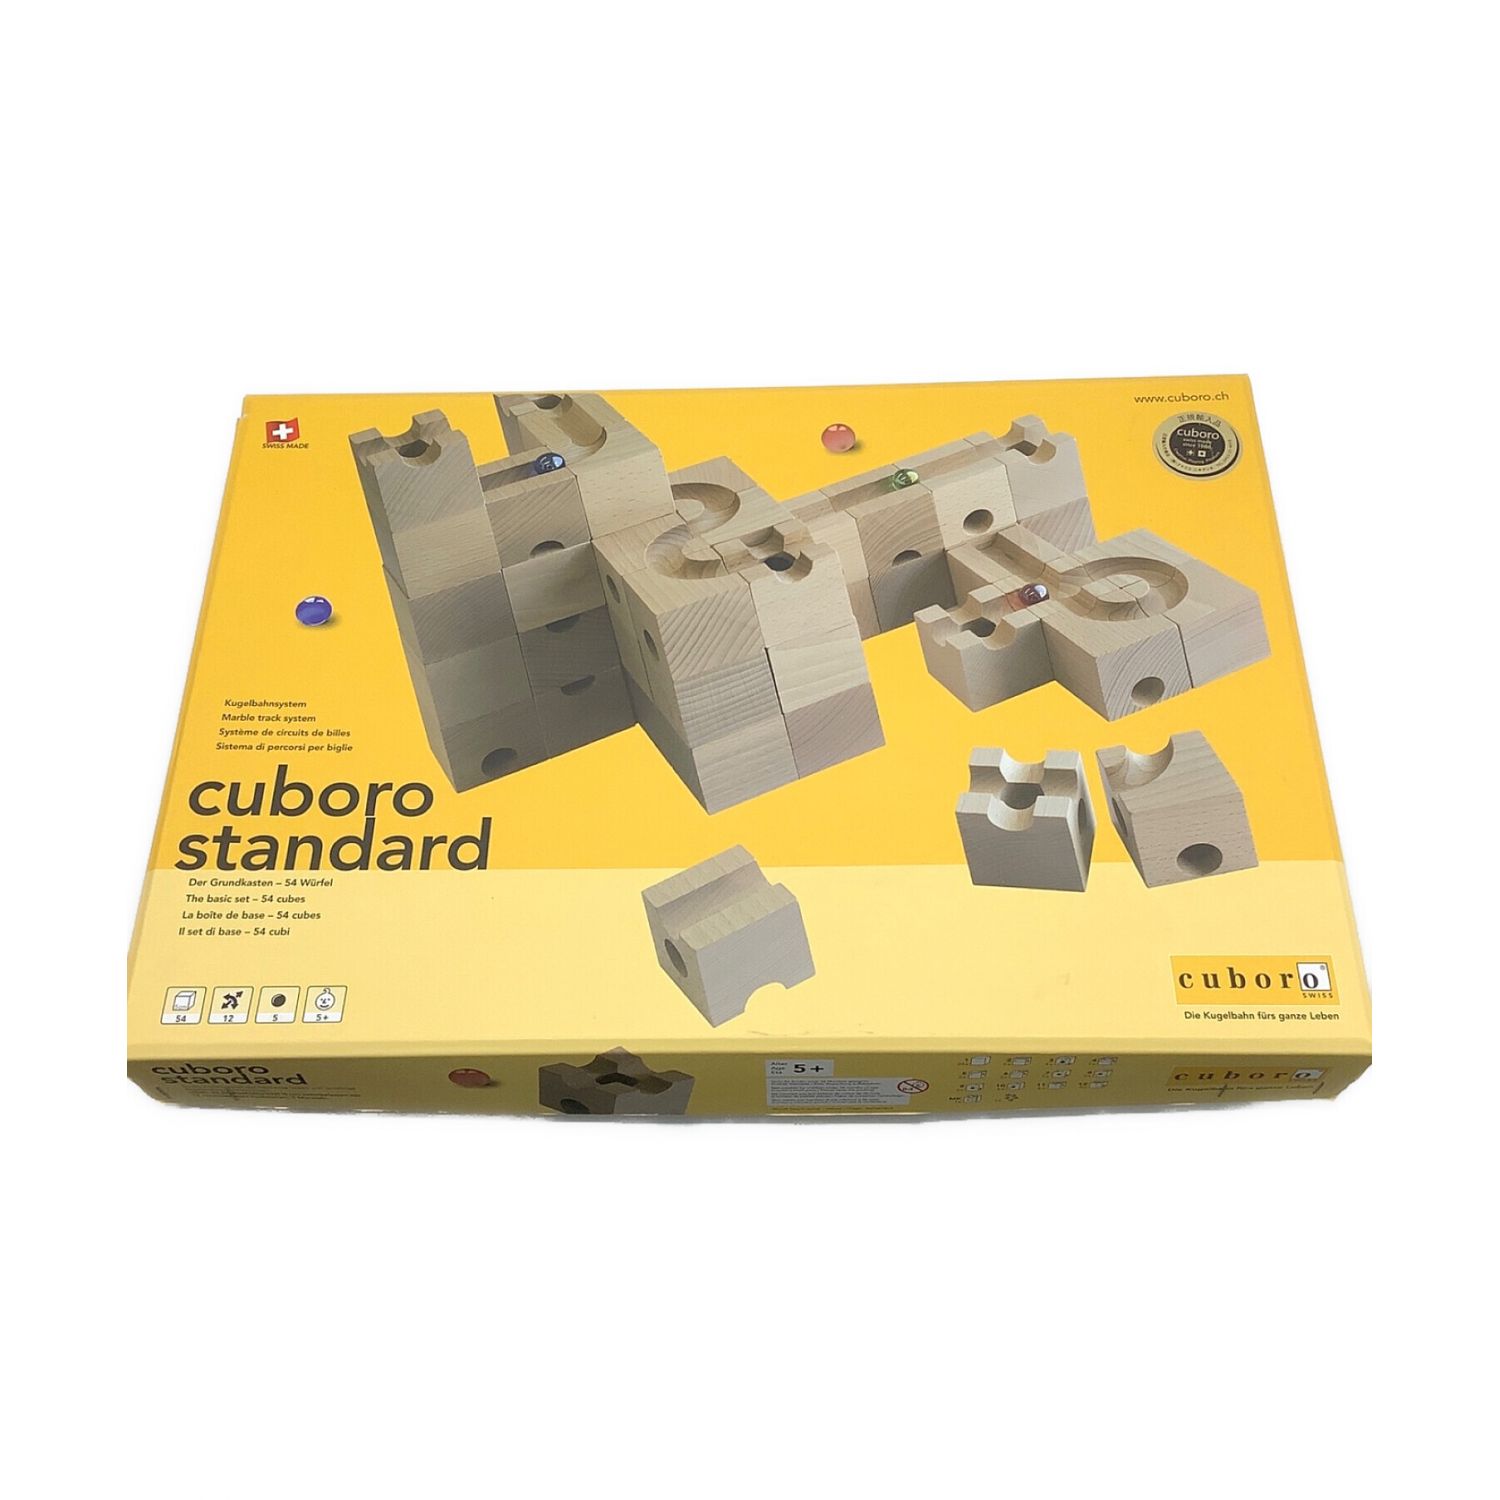 知育玩具Cuboro(キュボロ)Standard(スタンダード) 54ピース大容量